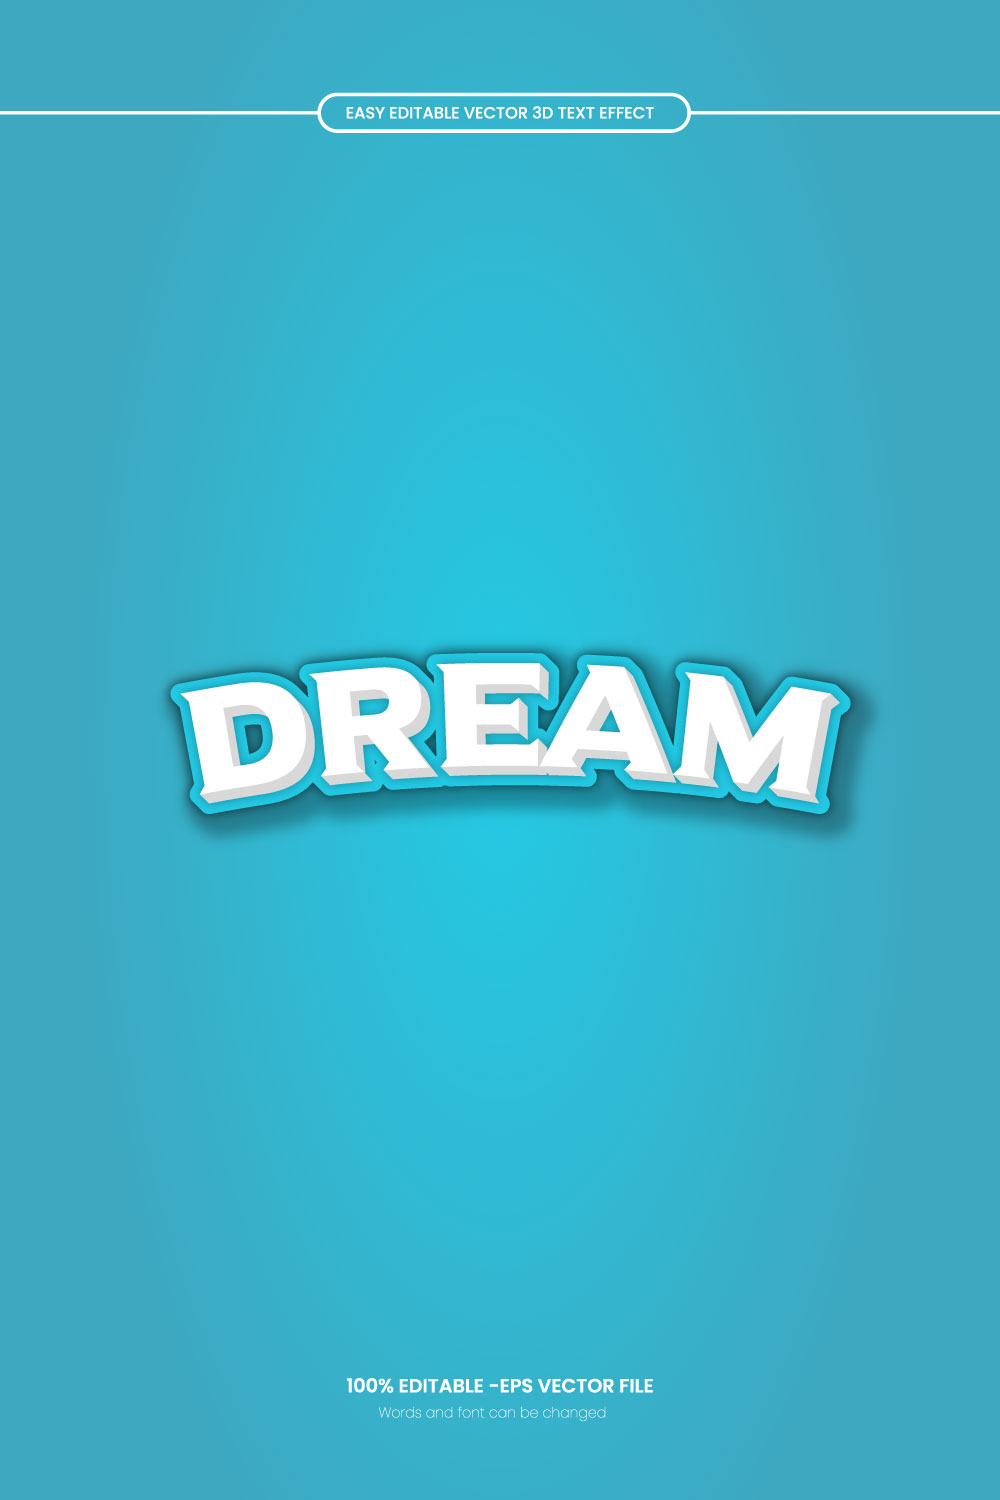 Dream 3d editable text effect design pinterest preview image.